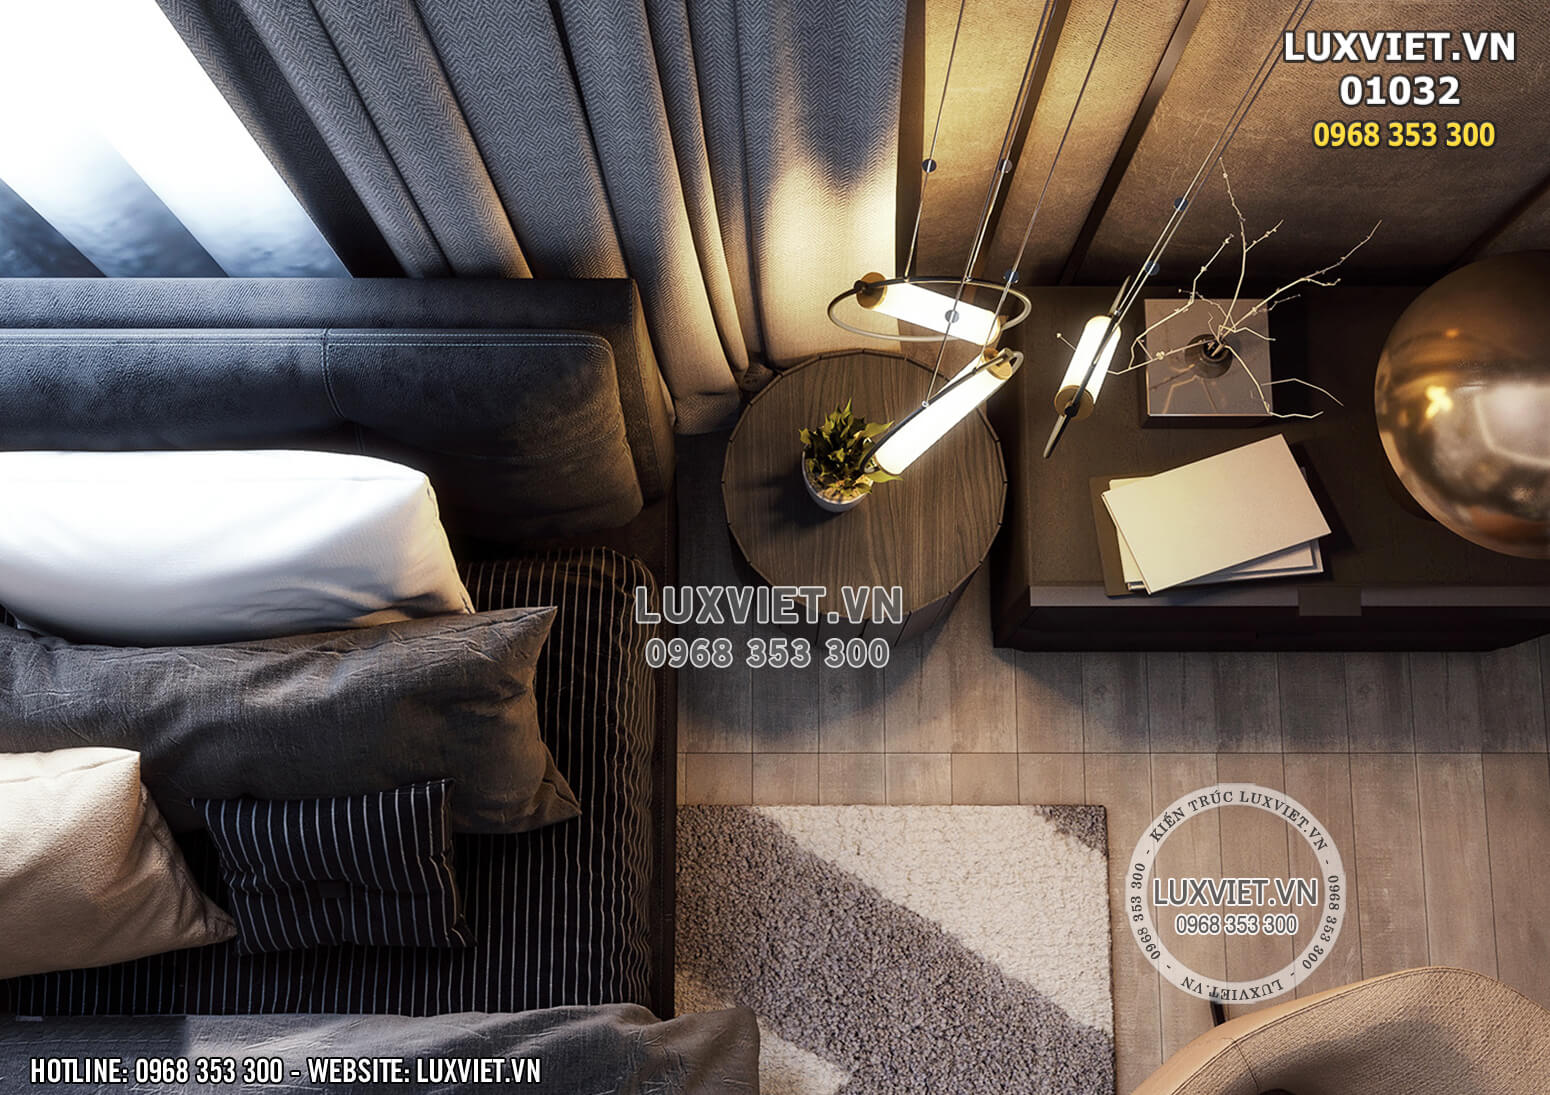 Hình ảnh: Góc decor nội thất luxury nhìn từ trên cao - LV 01032